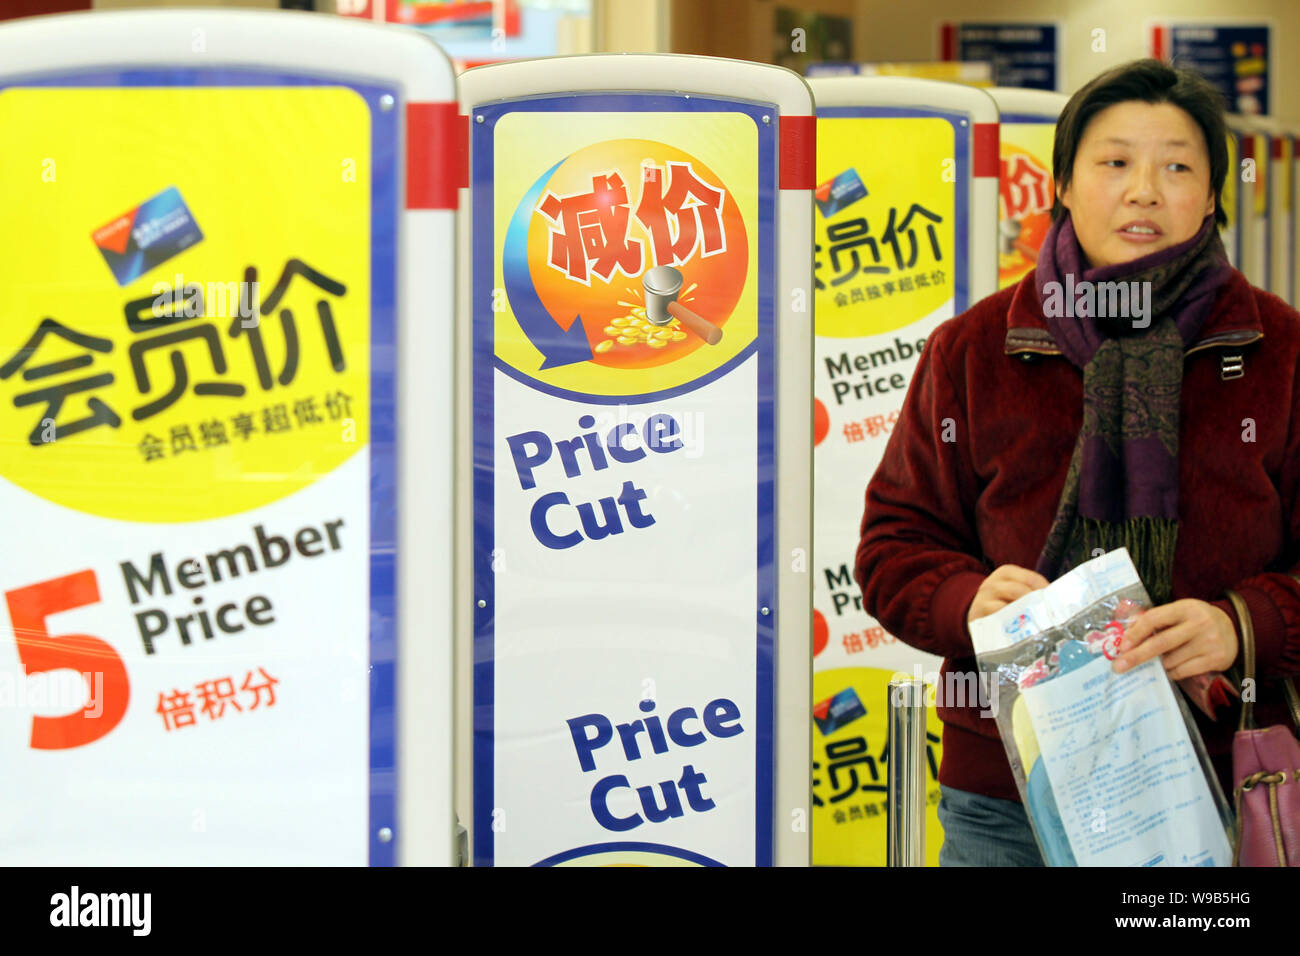 Un client chinois marche dernières affiches pour réduction de prix dans un supermarché dans la ville de Nantong, Chine de l'est de la province de Jiangsu, le 11 décembre 2010. Chines gouvernem Banque D'Images